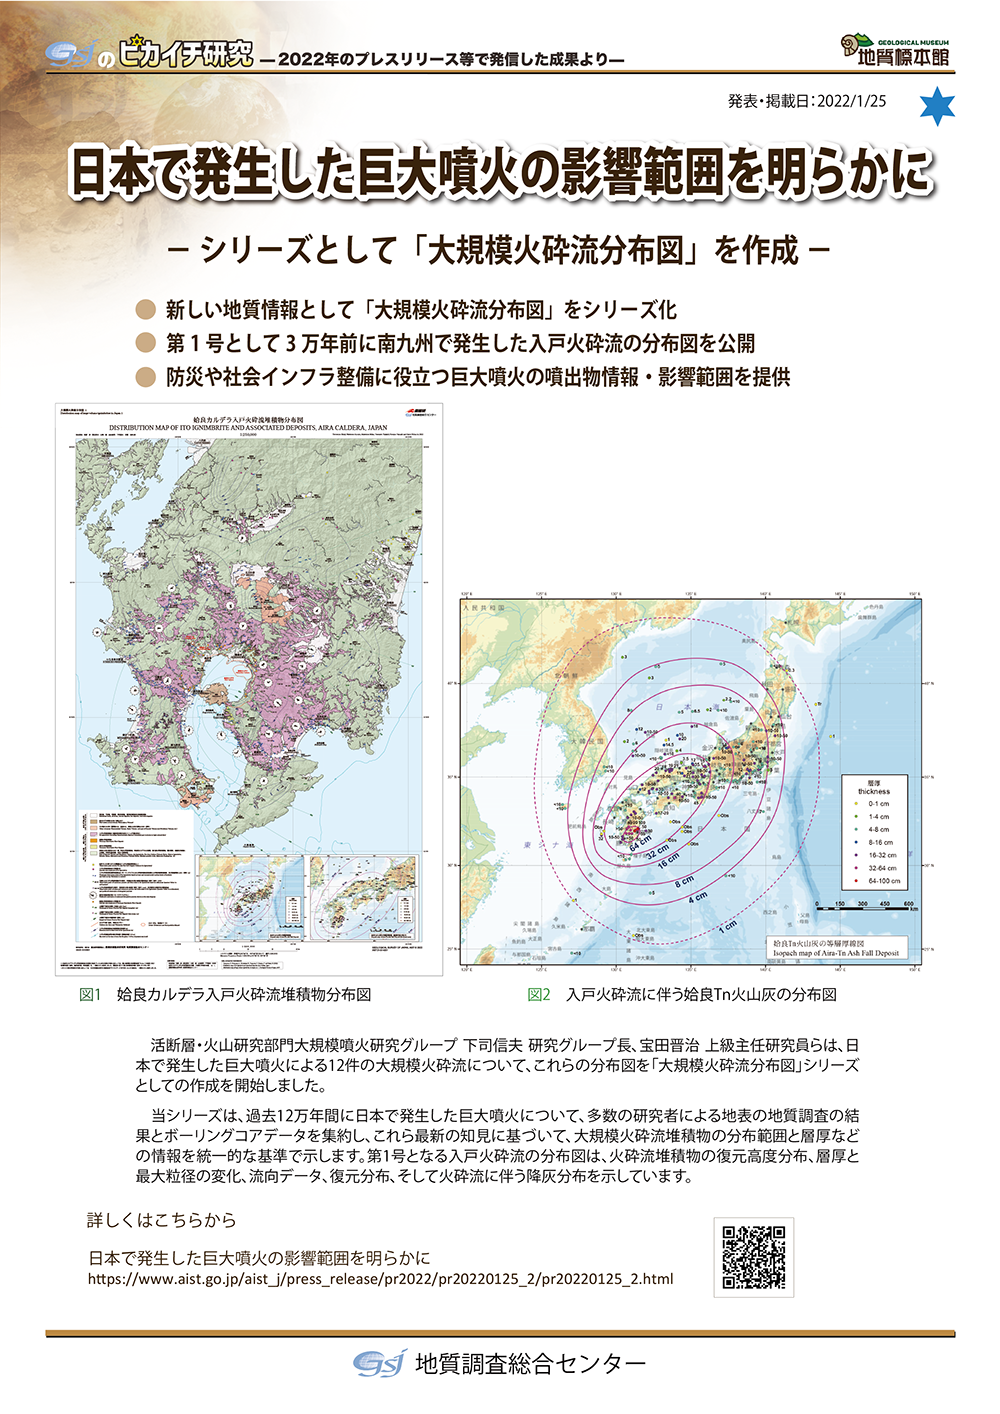 日本で発生した巨大噴火の影響範囲を明らかに　－シリーズとして「大規模火砕流分布図」を作成－